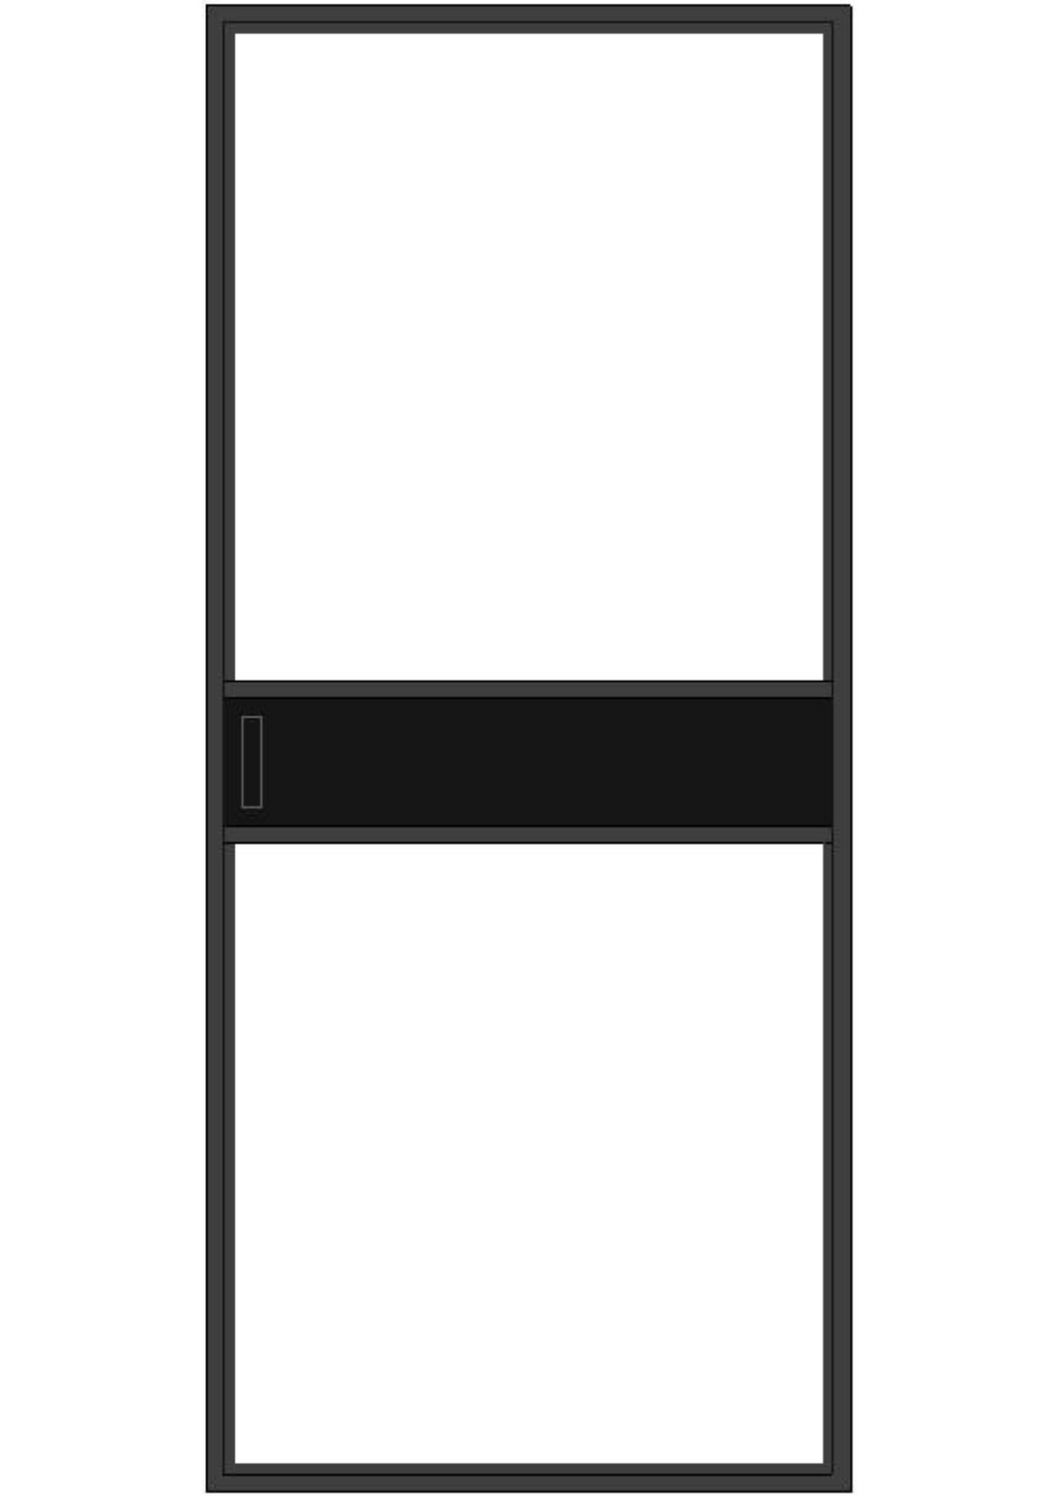 Framed Glass Door Series - GD2